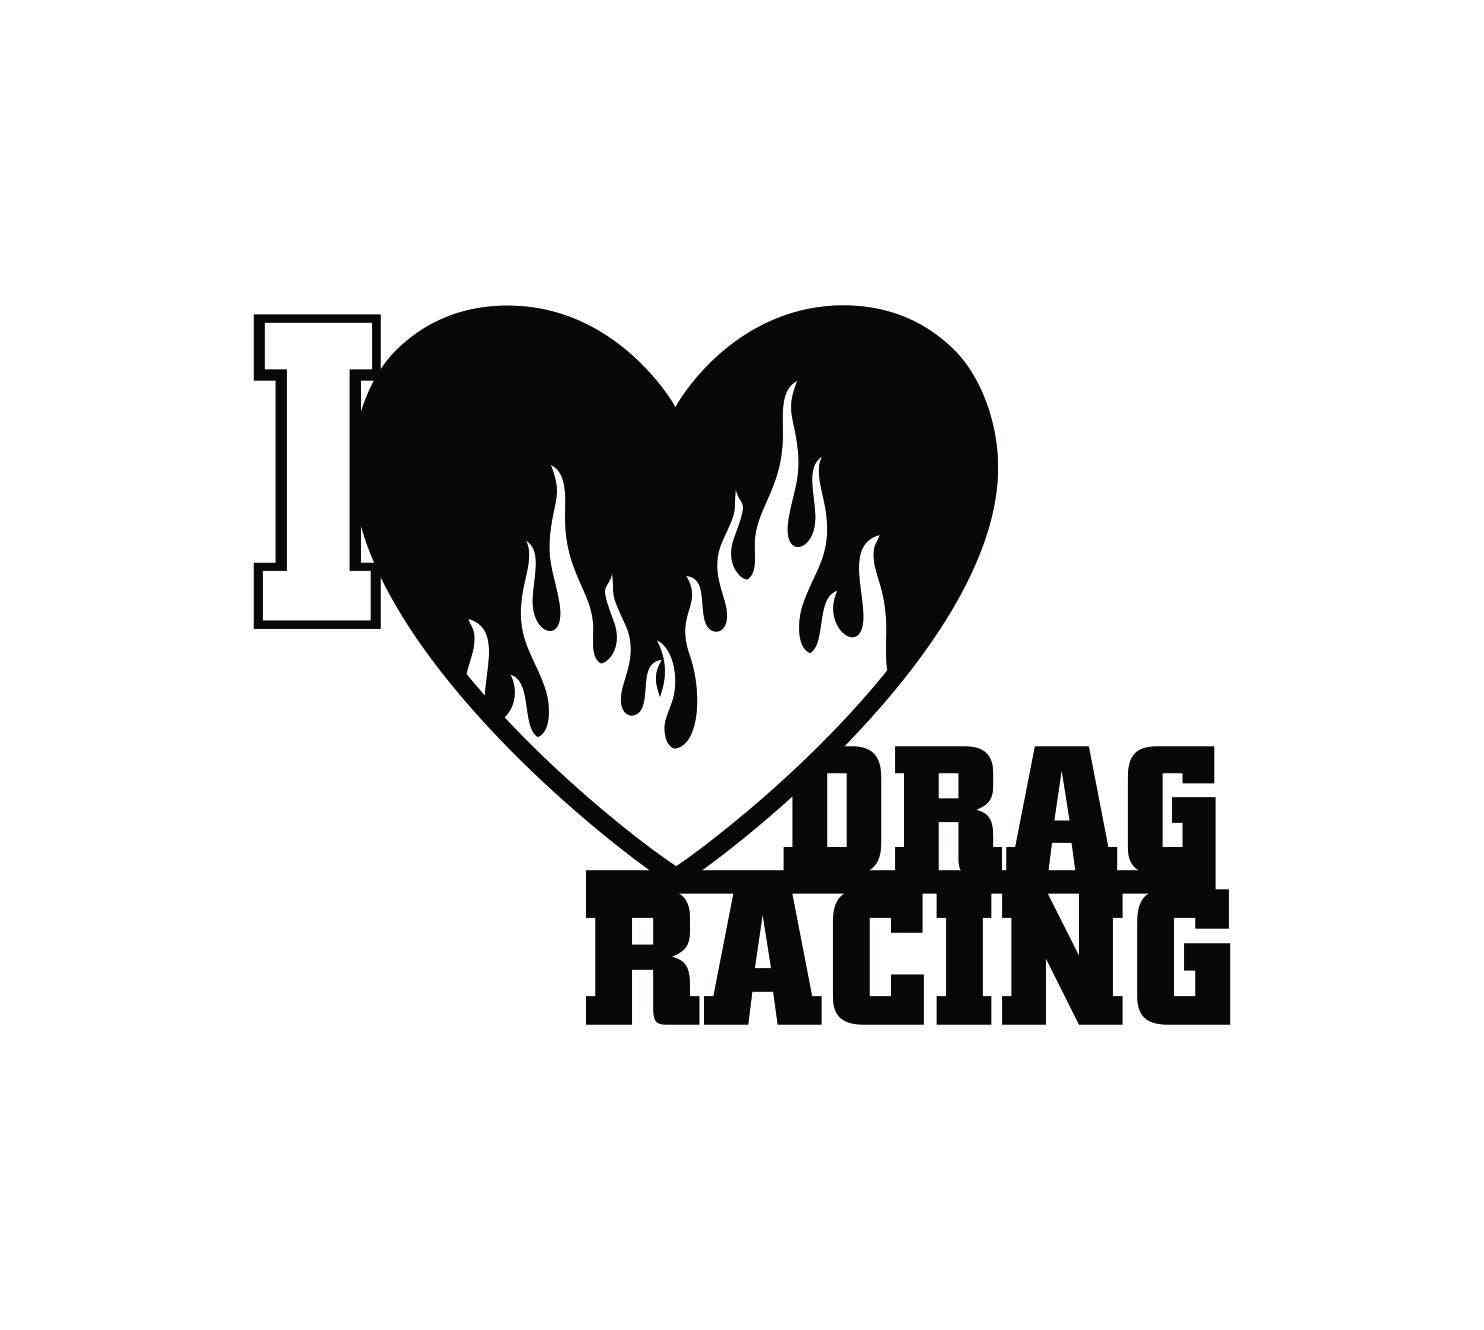 Jeg elsker drag racing tegn